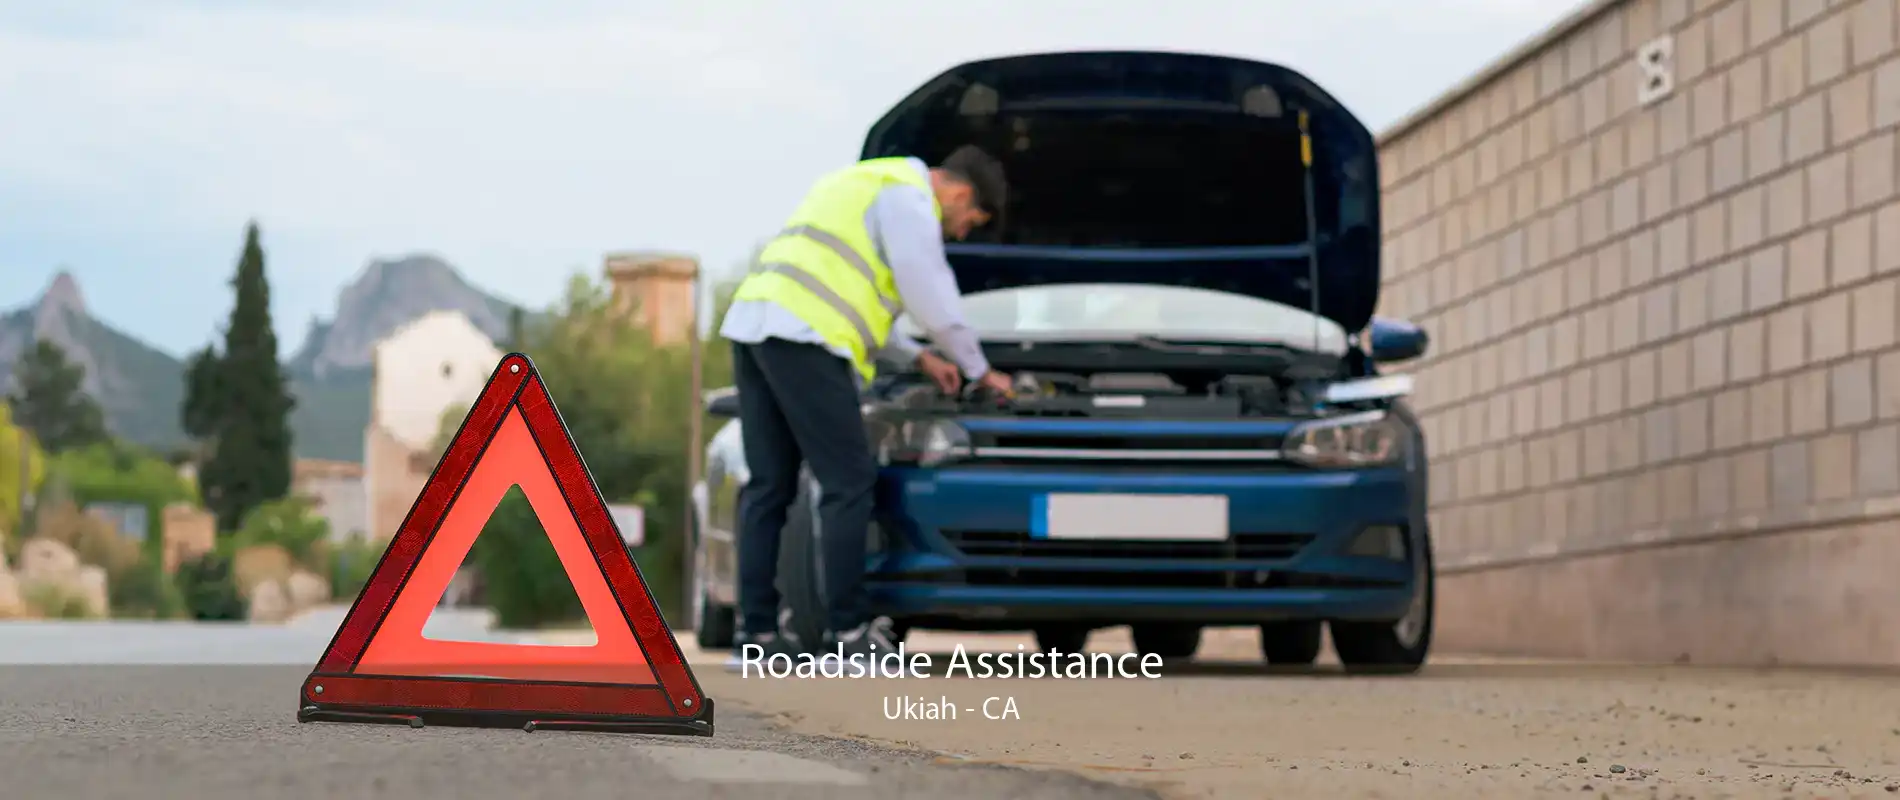 Roadside Assistance Ukiah - CA